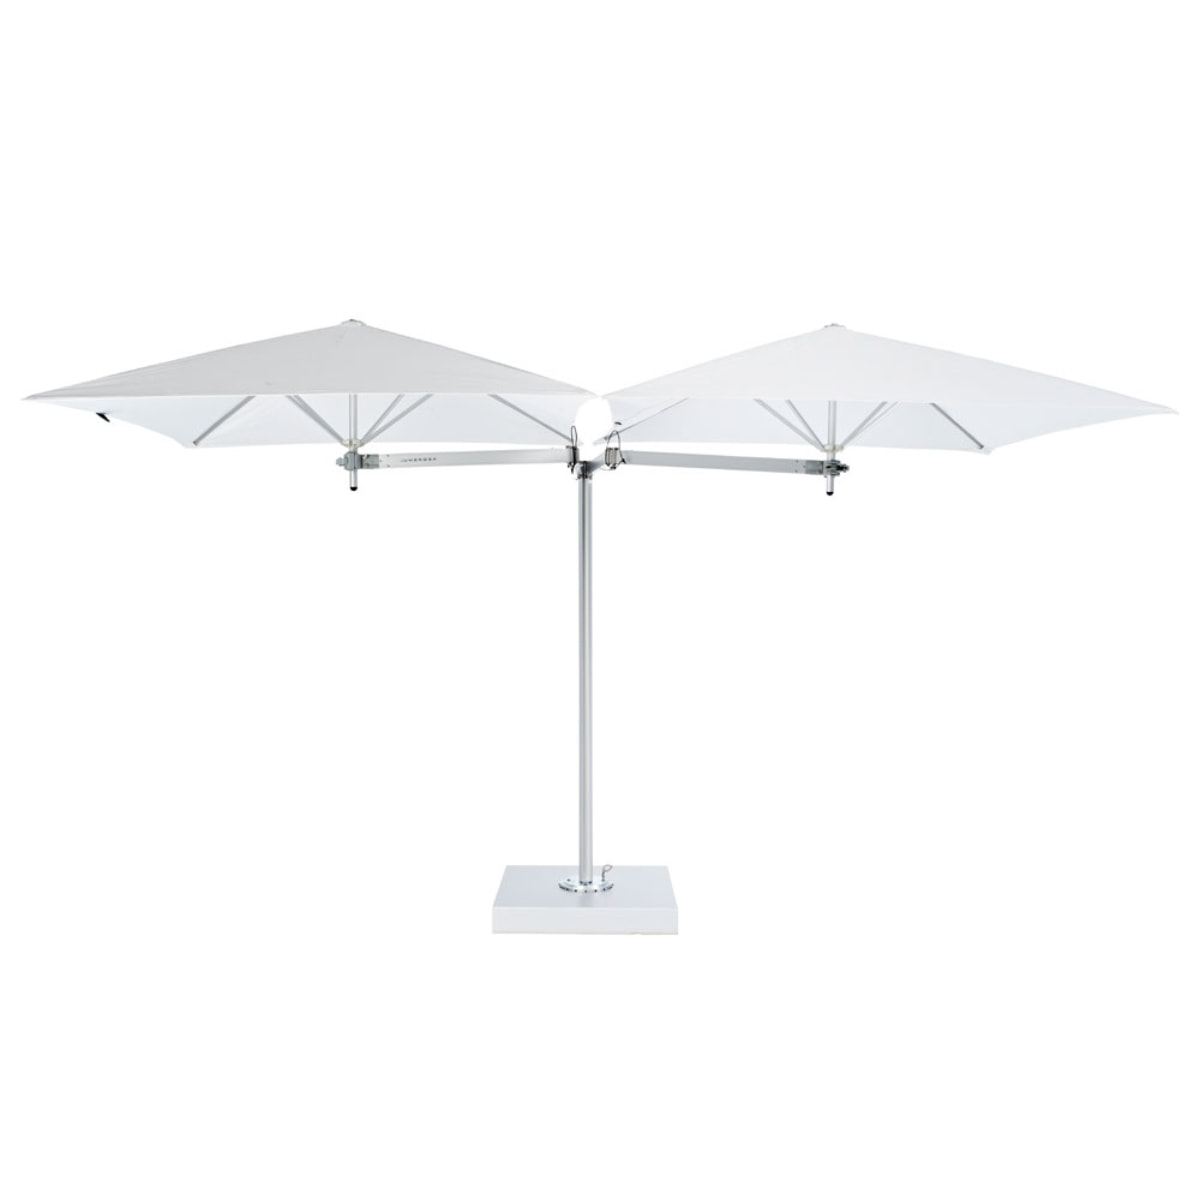 Офсетный зонт Umbrosa Paraflex Duo